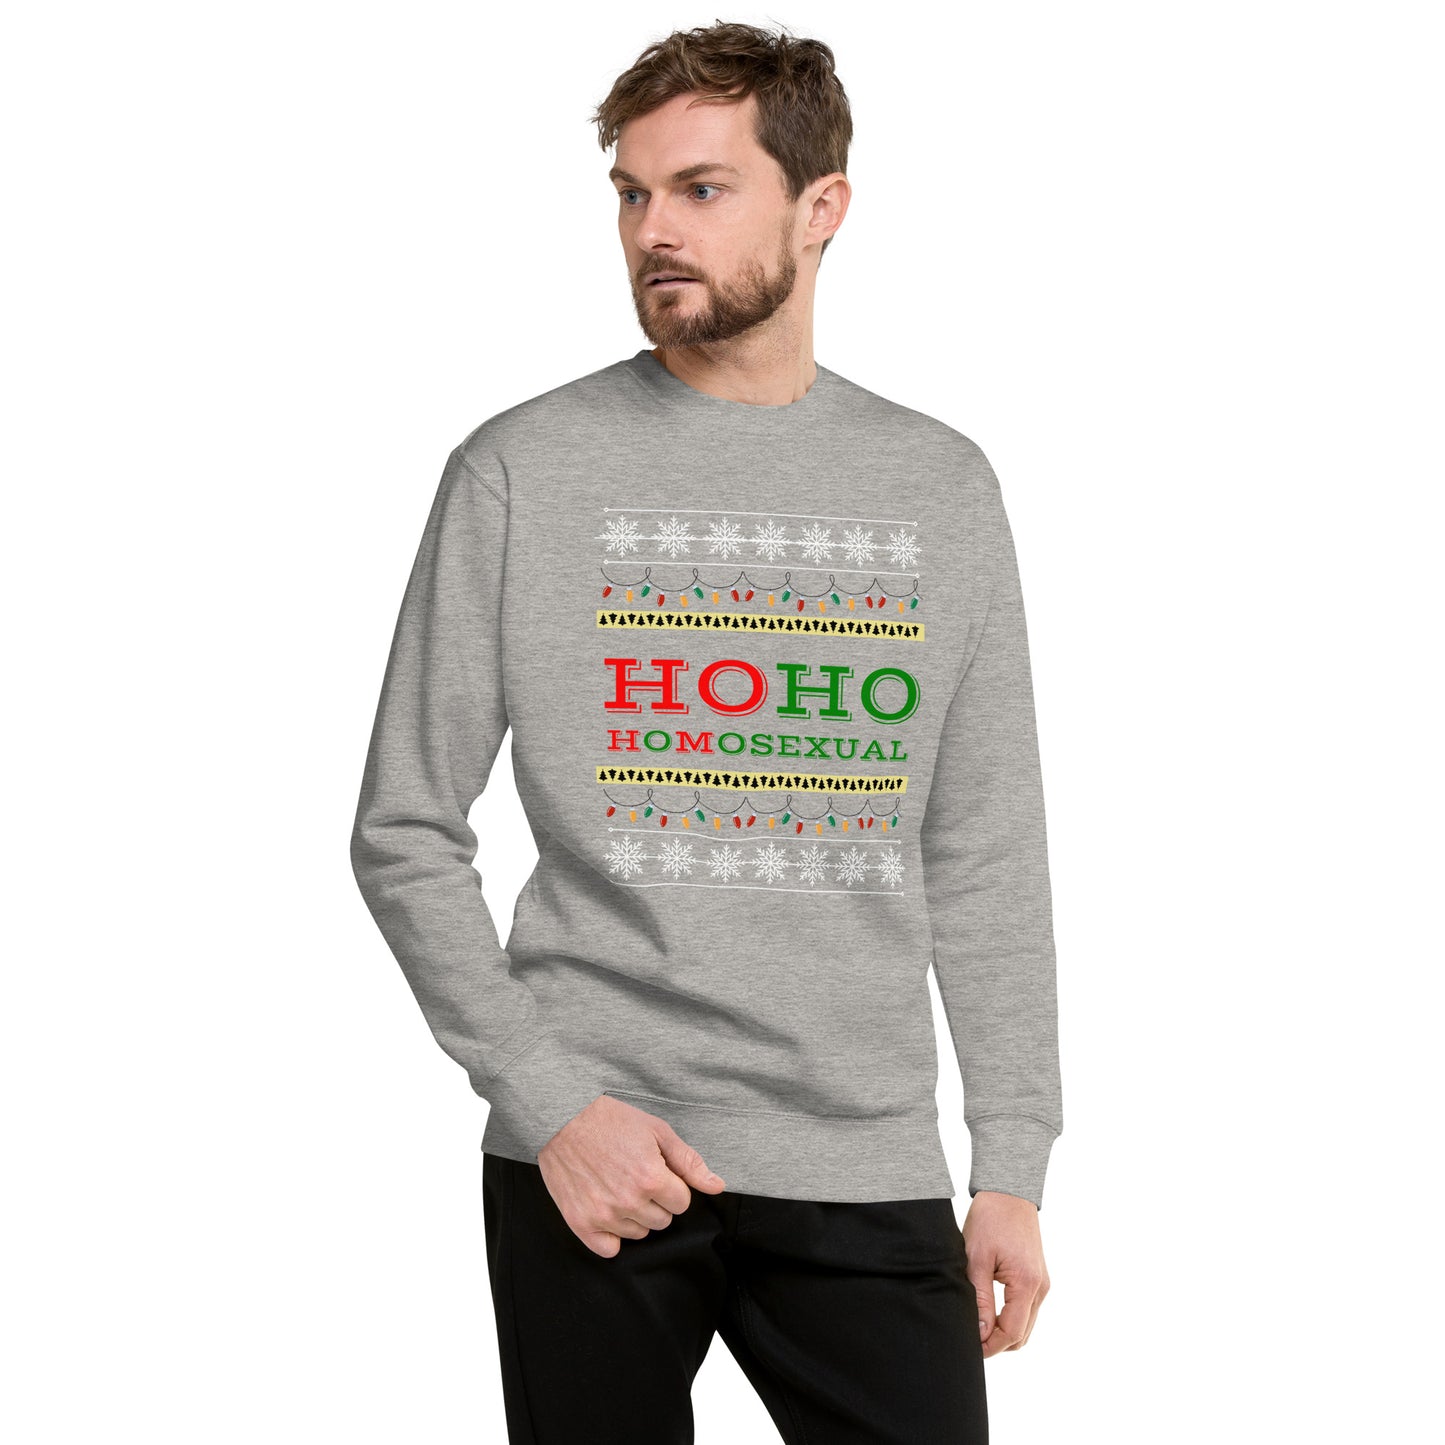 Ho Ho Homo Sweatshirt